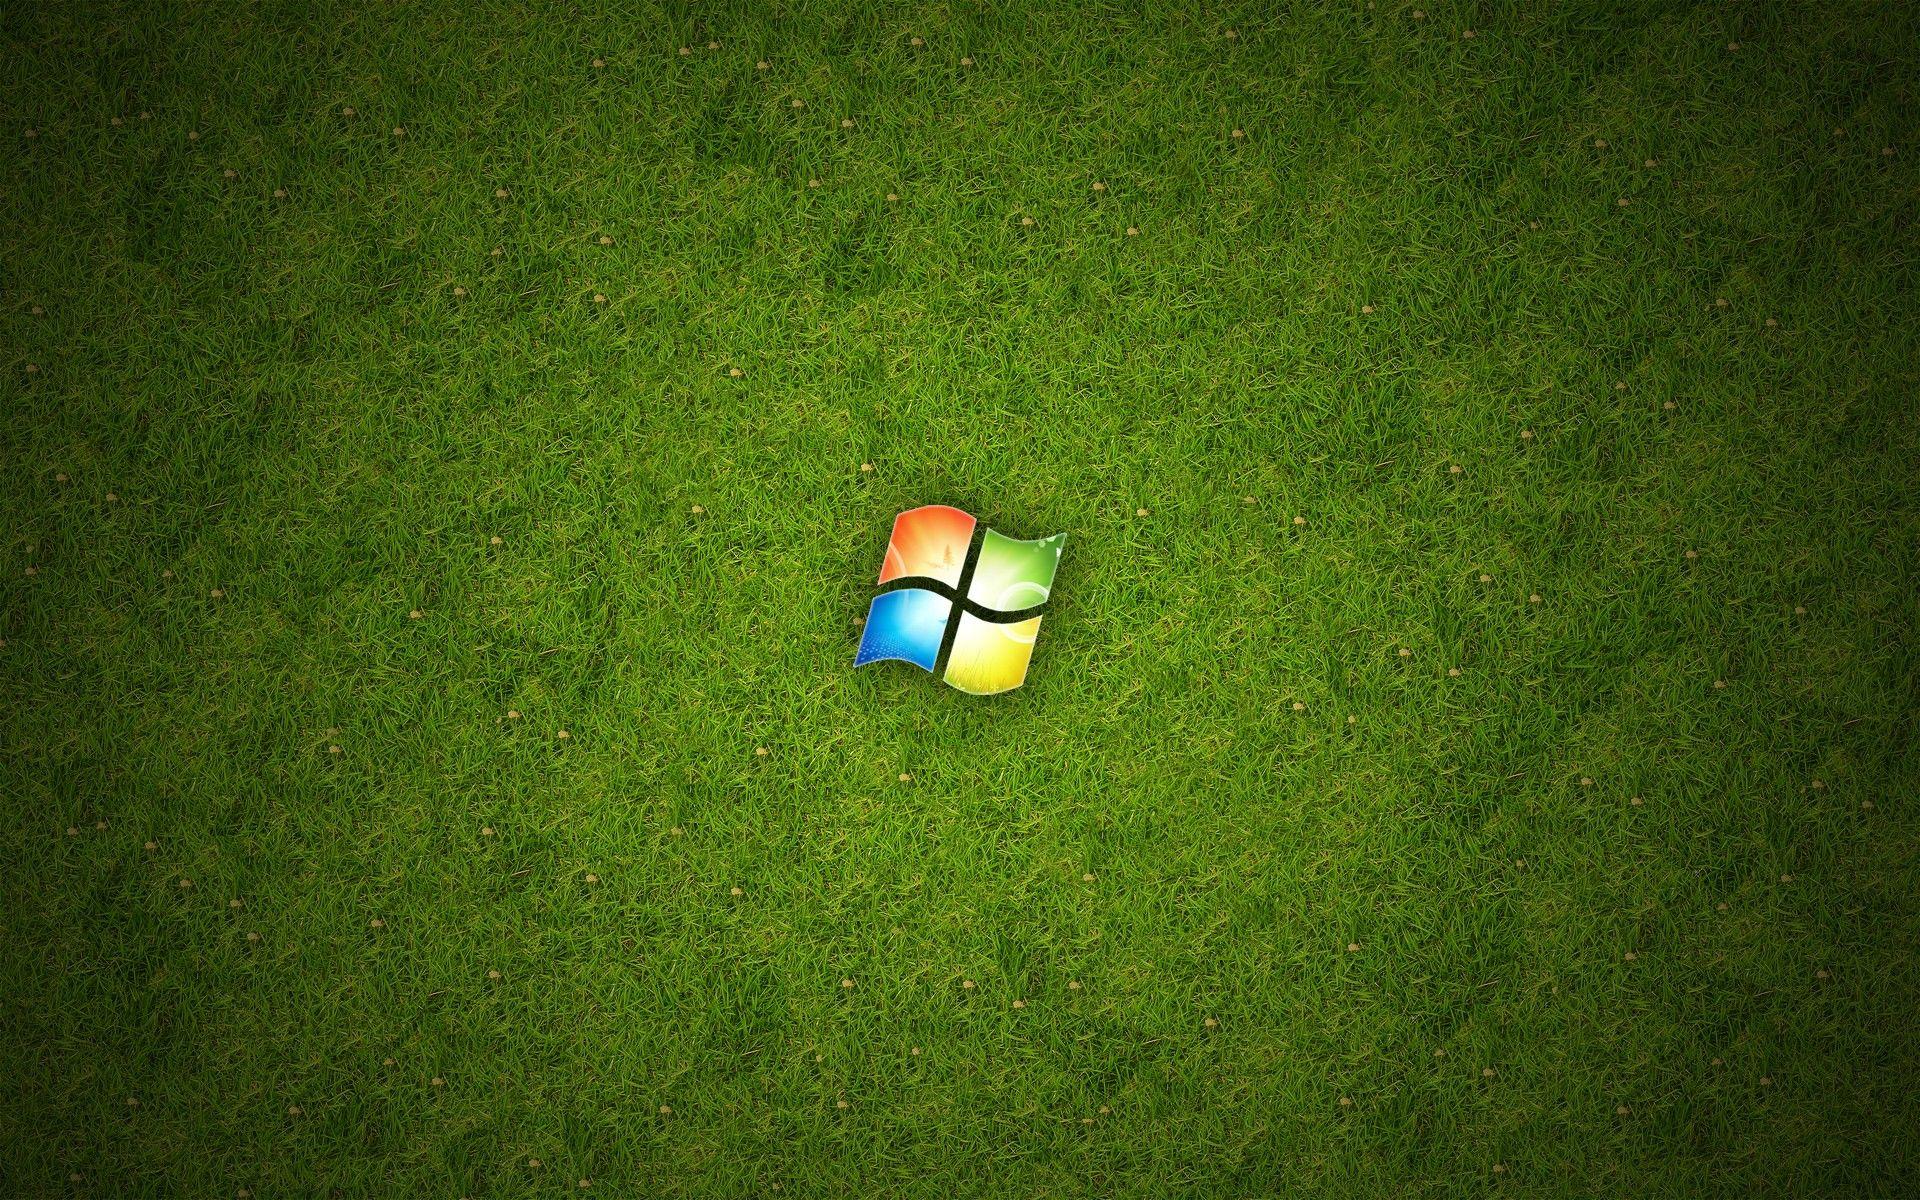 That S A Green Ball Logo - Wallpaper : grass, logo, green, technology, Microsoft Windows, ball